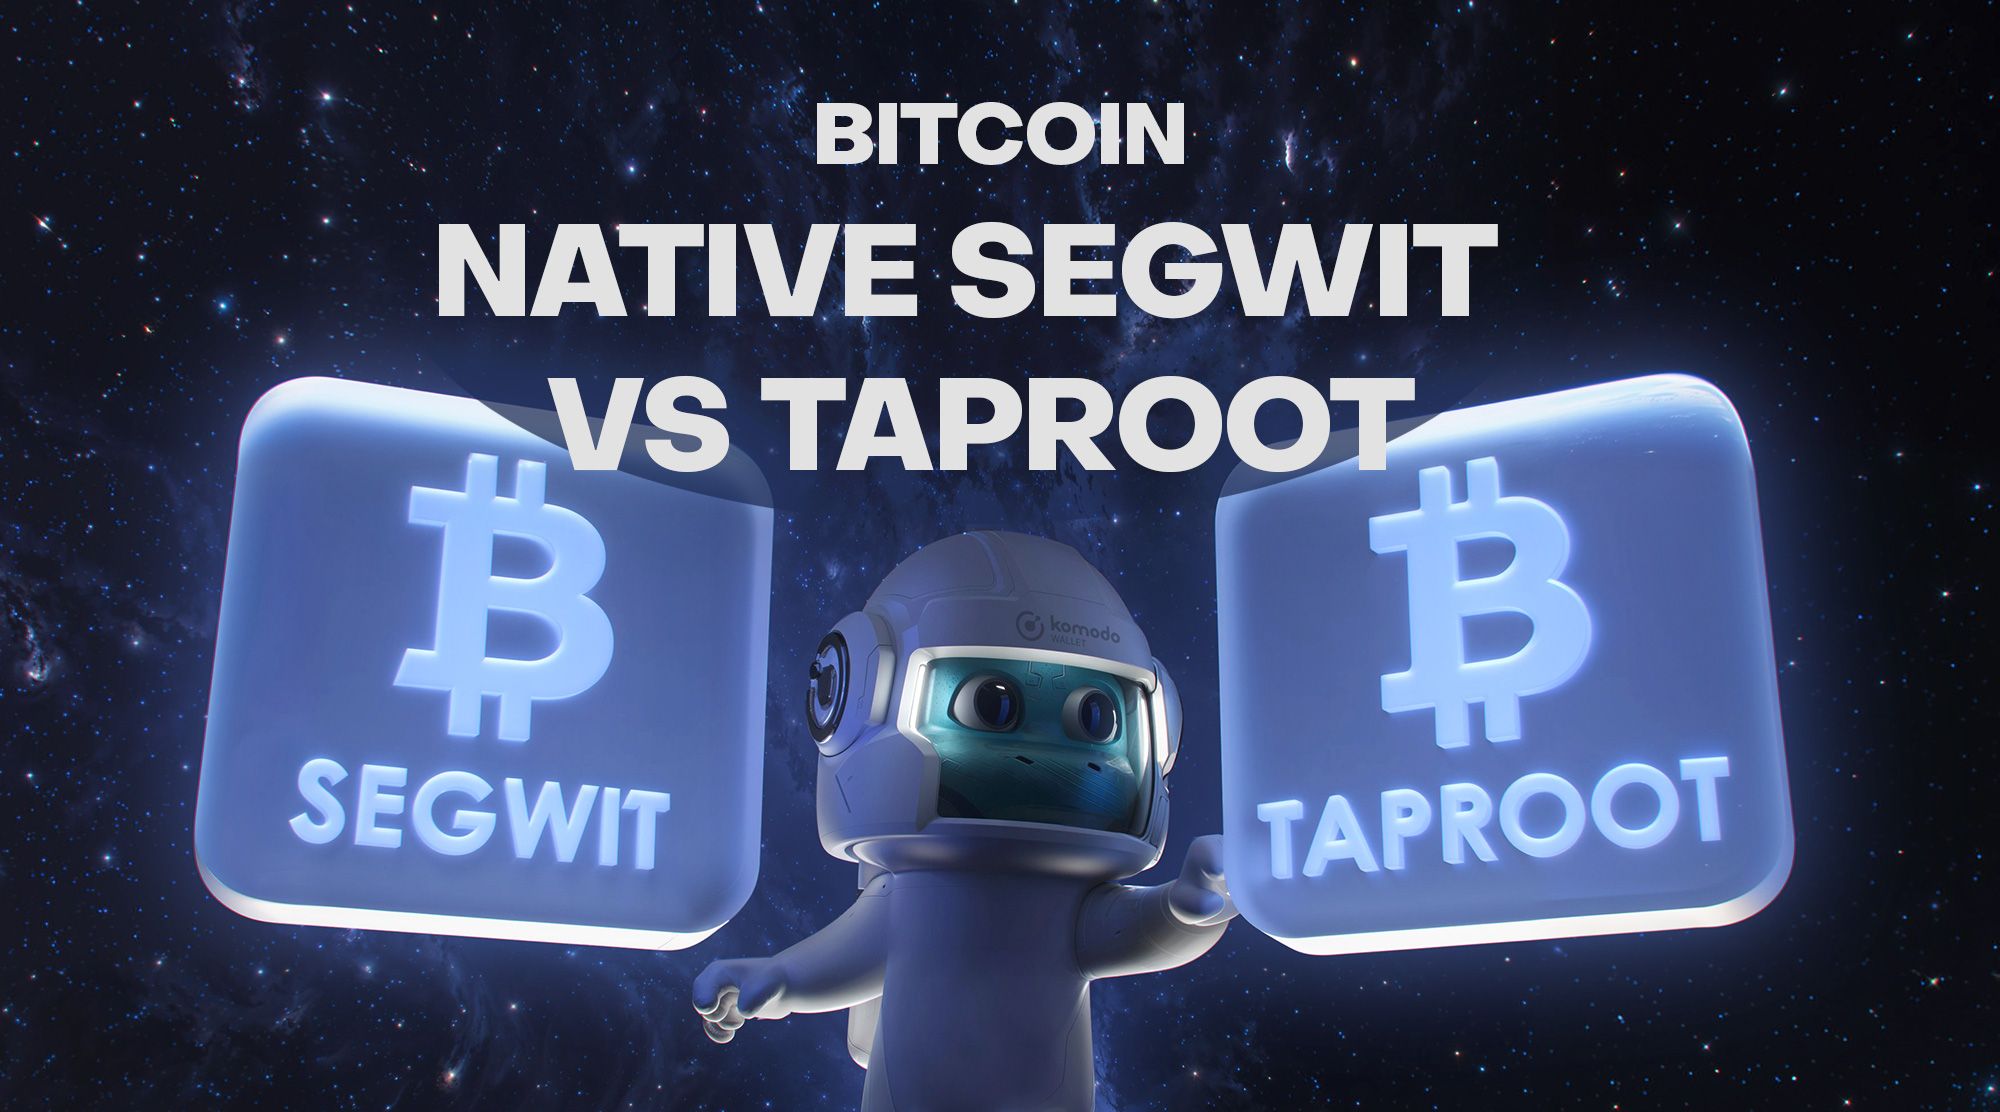 Bitcoin: Native SegWit Vs. Taproot